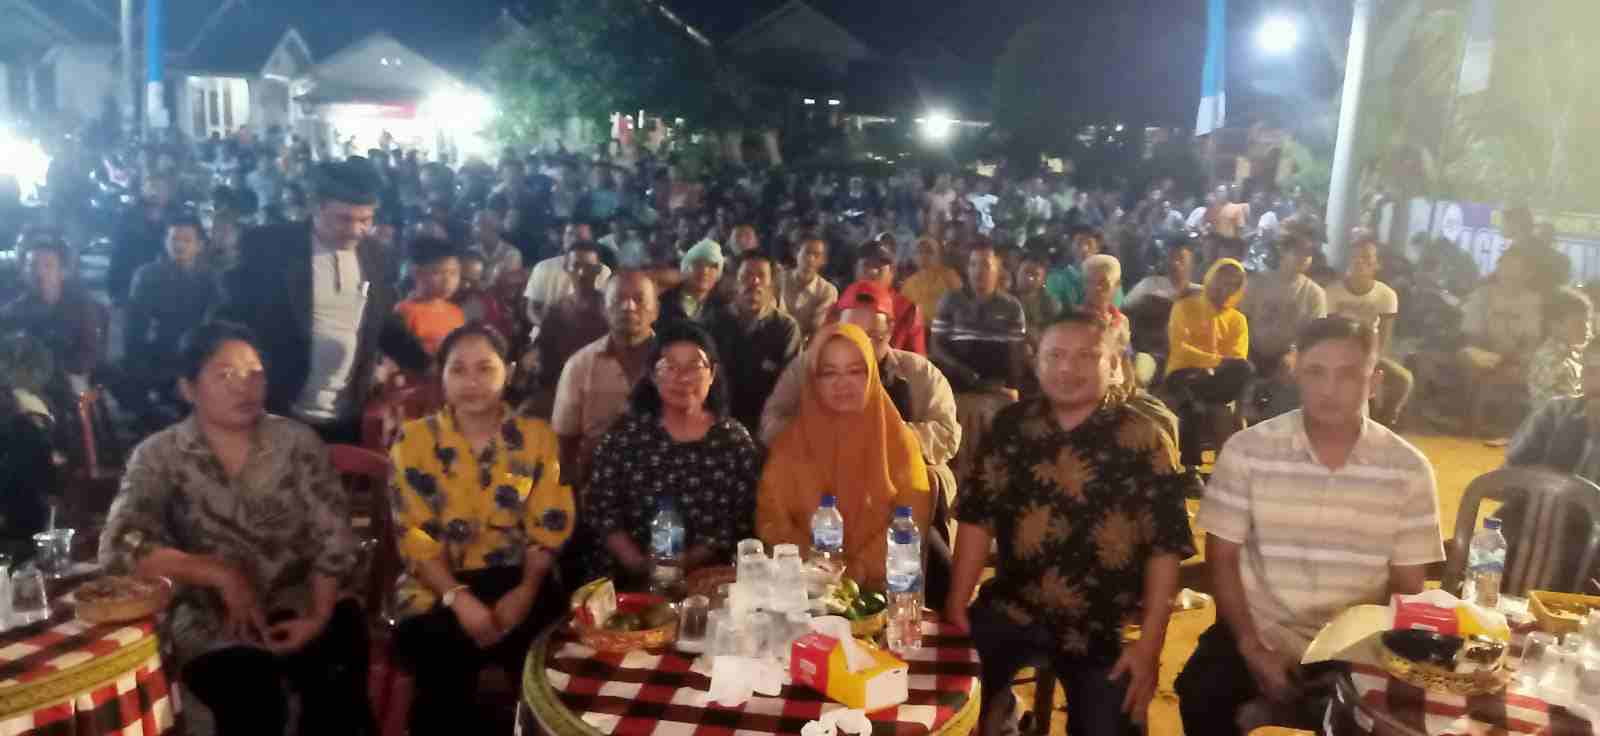 Wagub Nunik Lantik Dua PJ Bupati Tuba Dan Lampung Barat